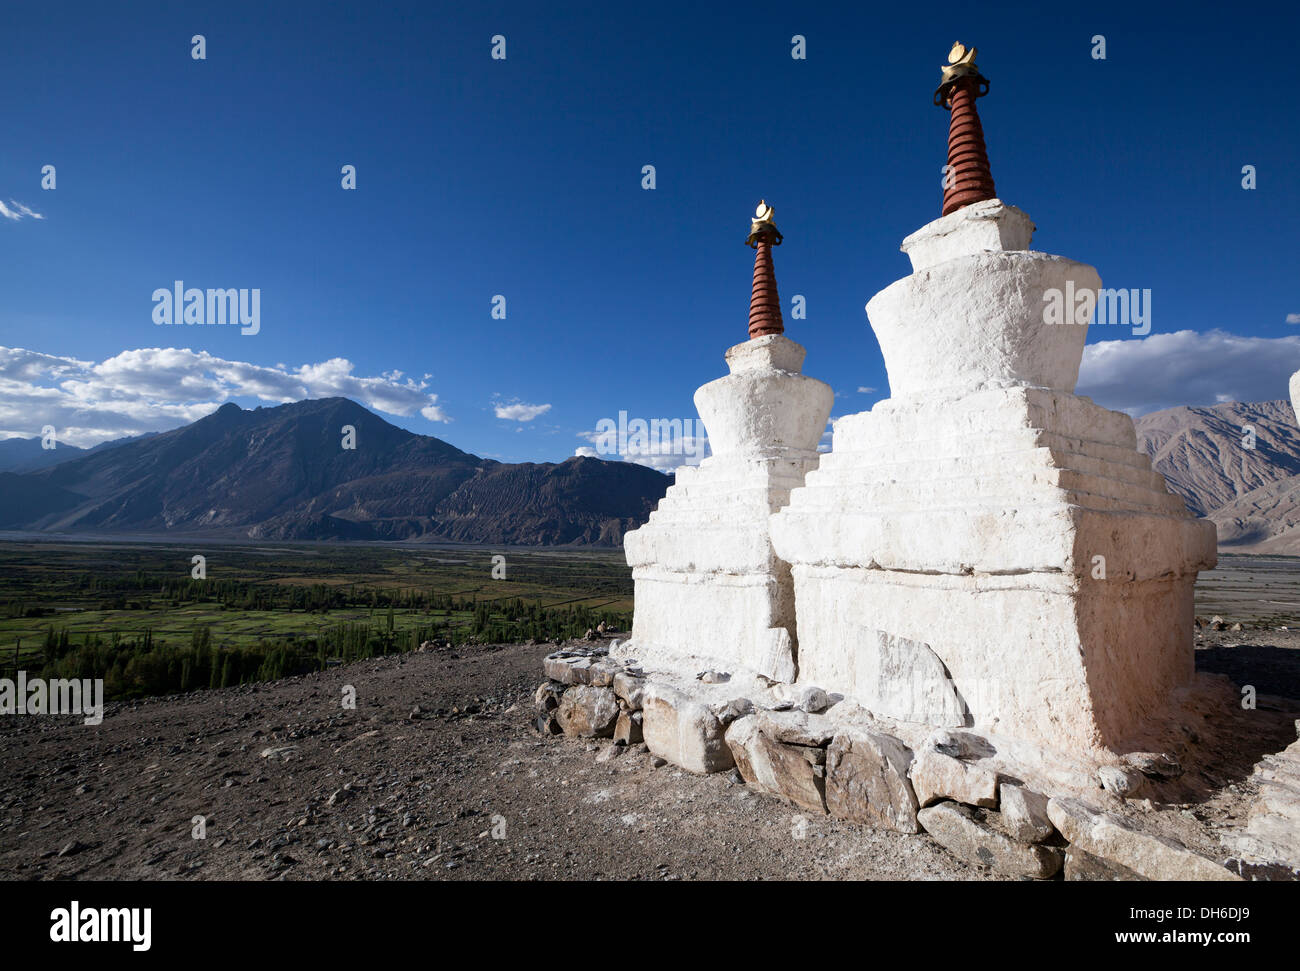 Buddhist Stupas overlooking Nubra Valley, Diskit monastery, Ladakh, Northern India Stock Photo